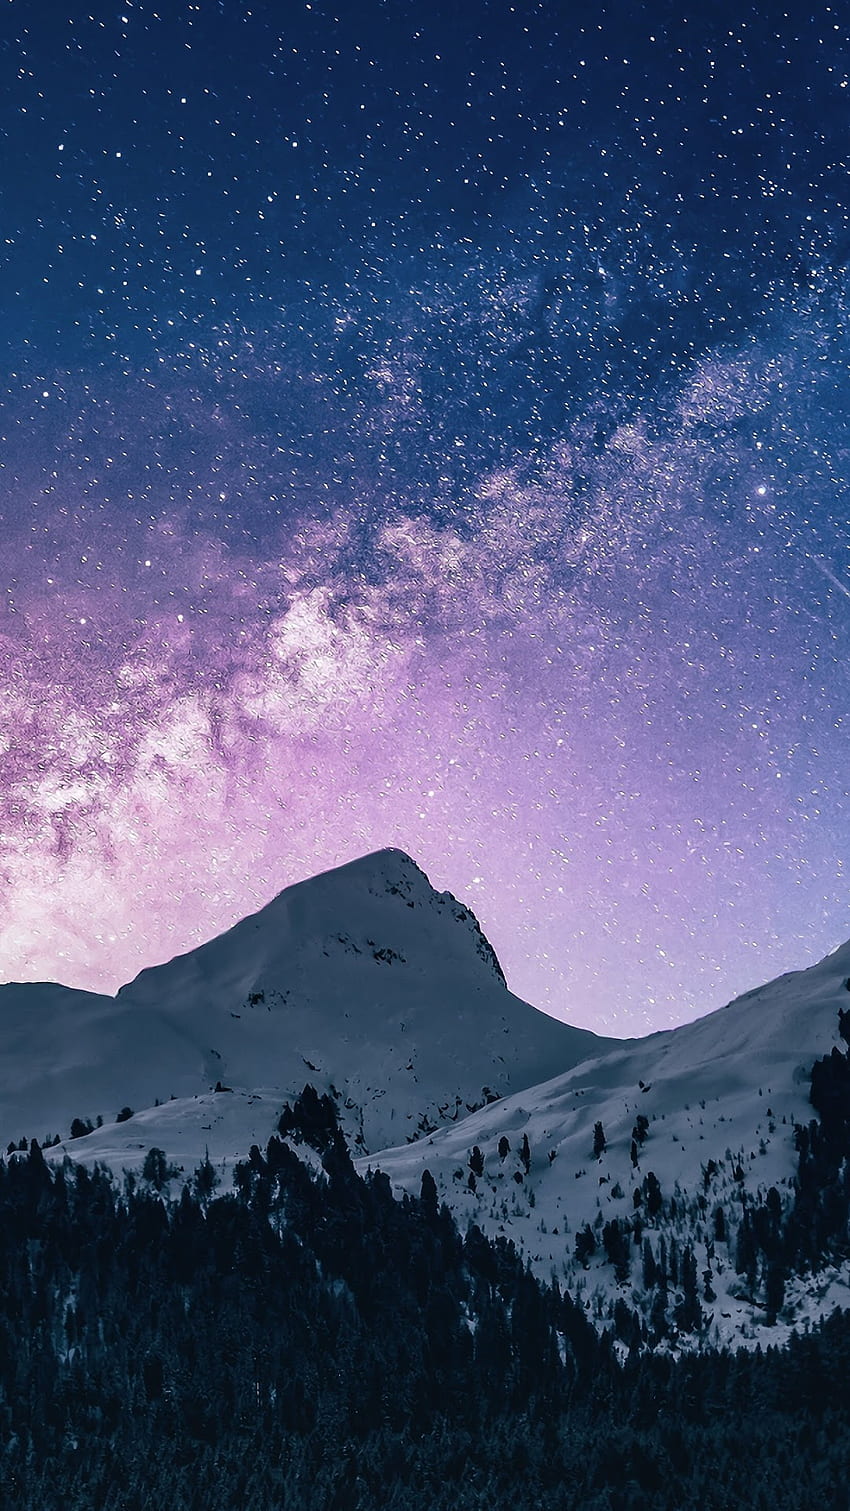 Cielo Nocturno, Estrellas, Cometa, Montañas Teléfono, y Cielo Nocturno Invernal iPhone fondo de pantalla del teléfono